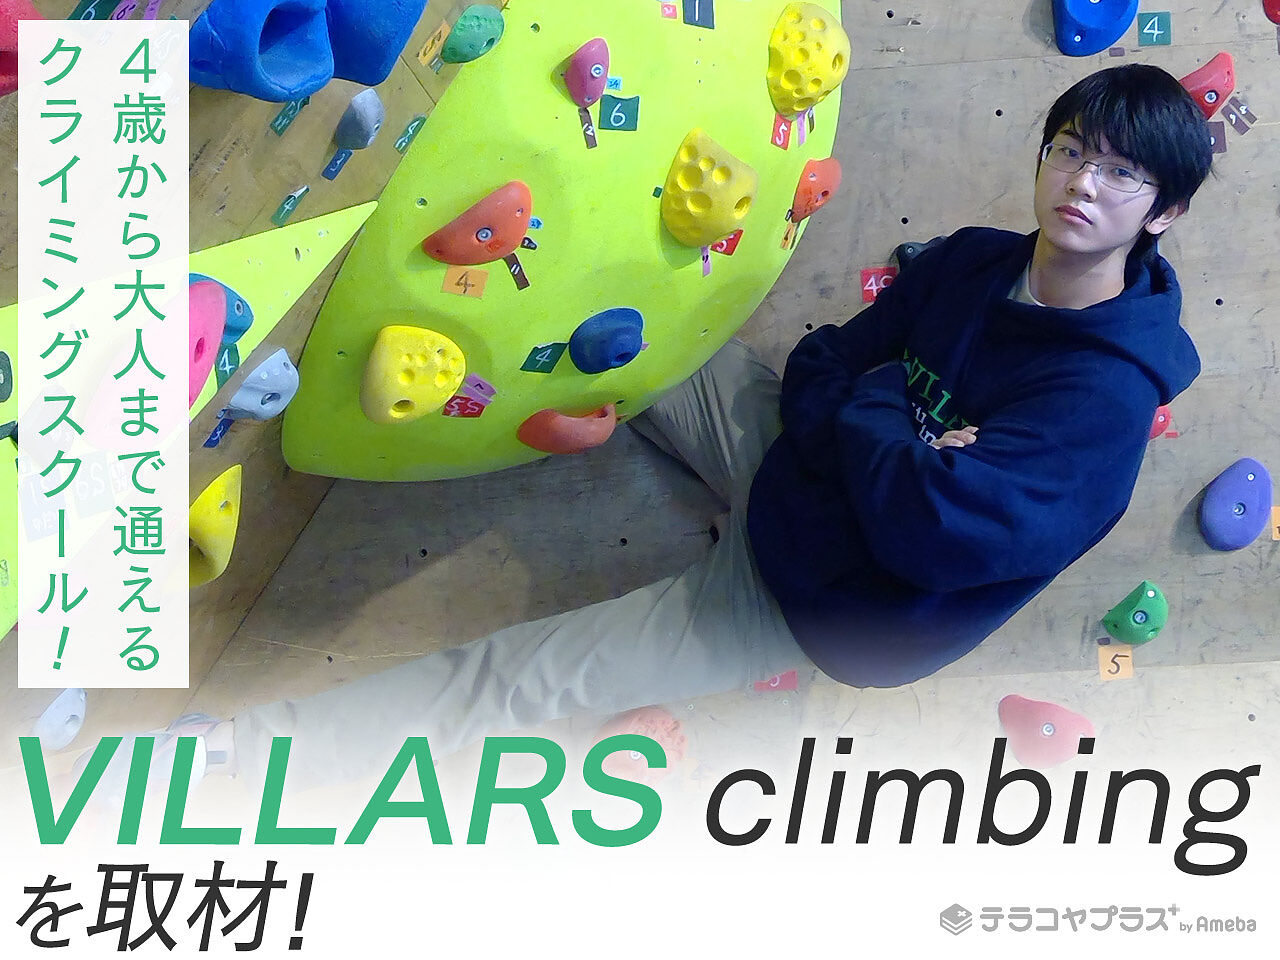 クライミング初心者やキッズが気軽に足を運べる「VILLARS climbing」4歳から大人まで通えるスクールを紹介の画像